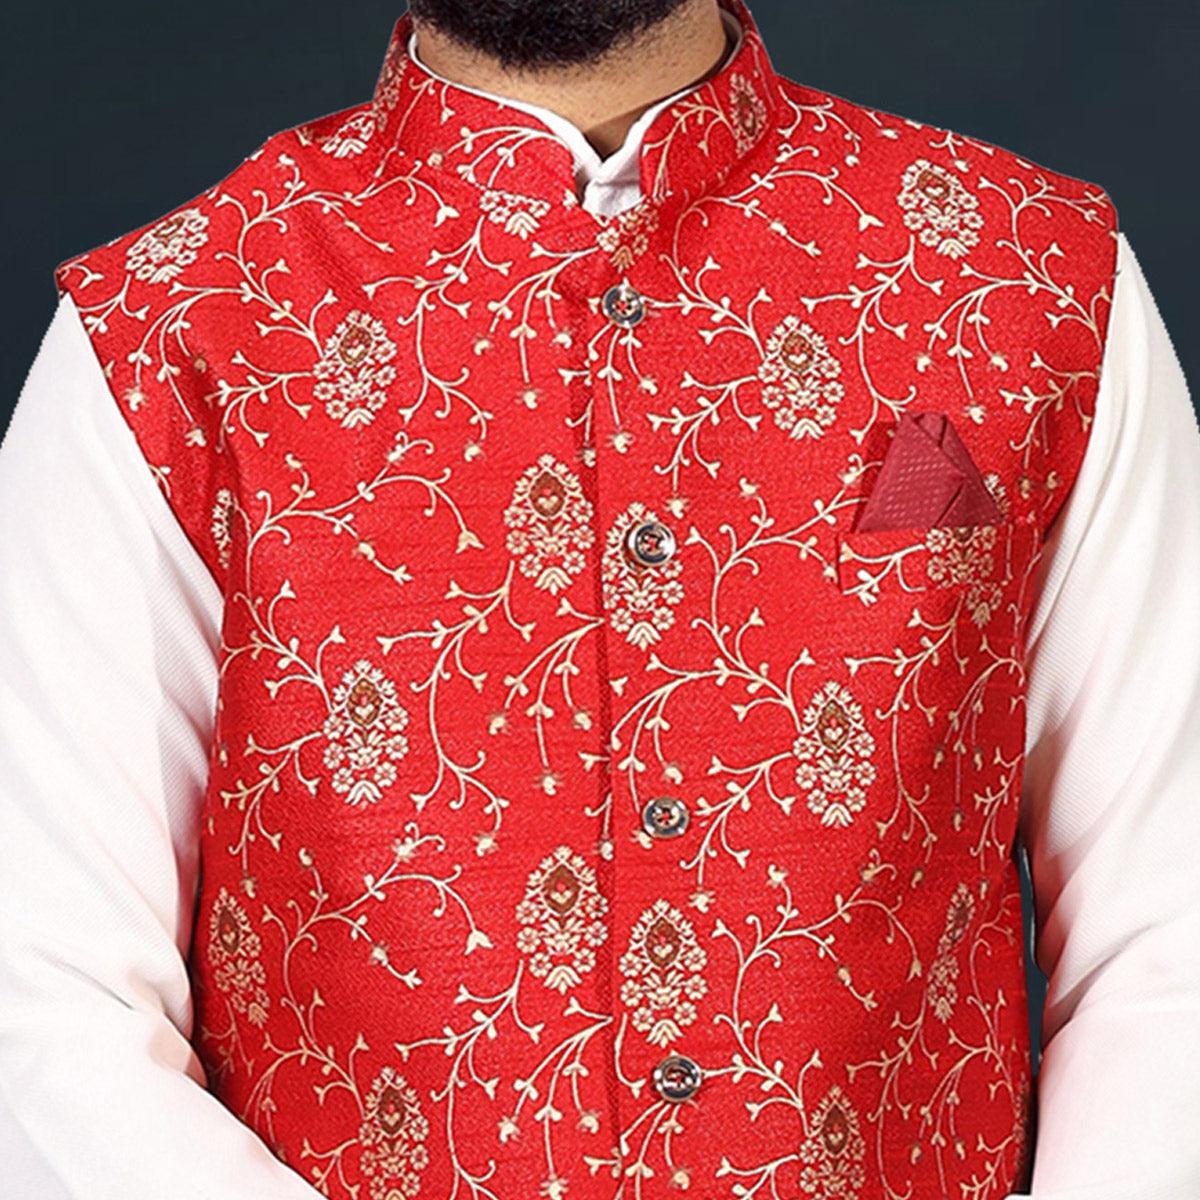 Ethnic Red Colored Festive Jacquard Print Jute Modi Jacket